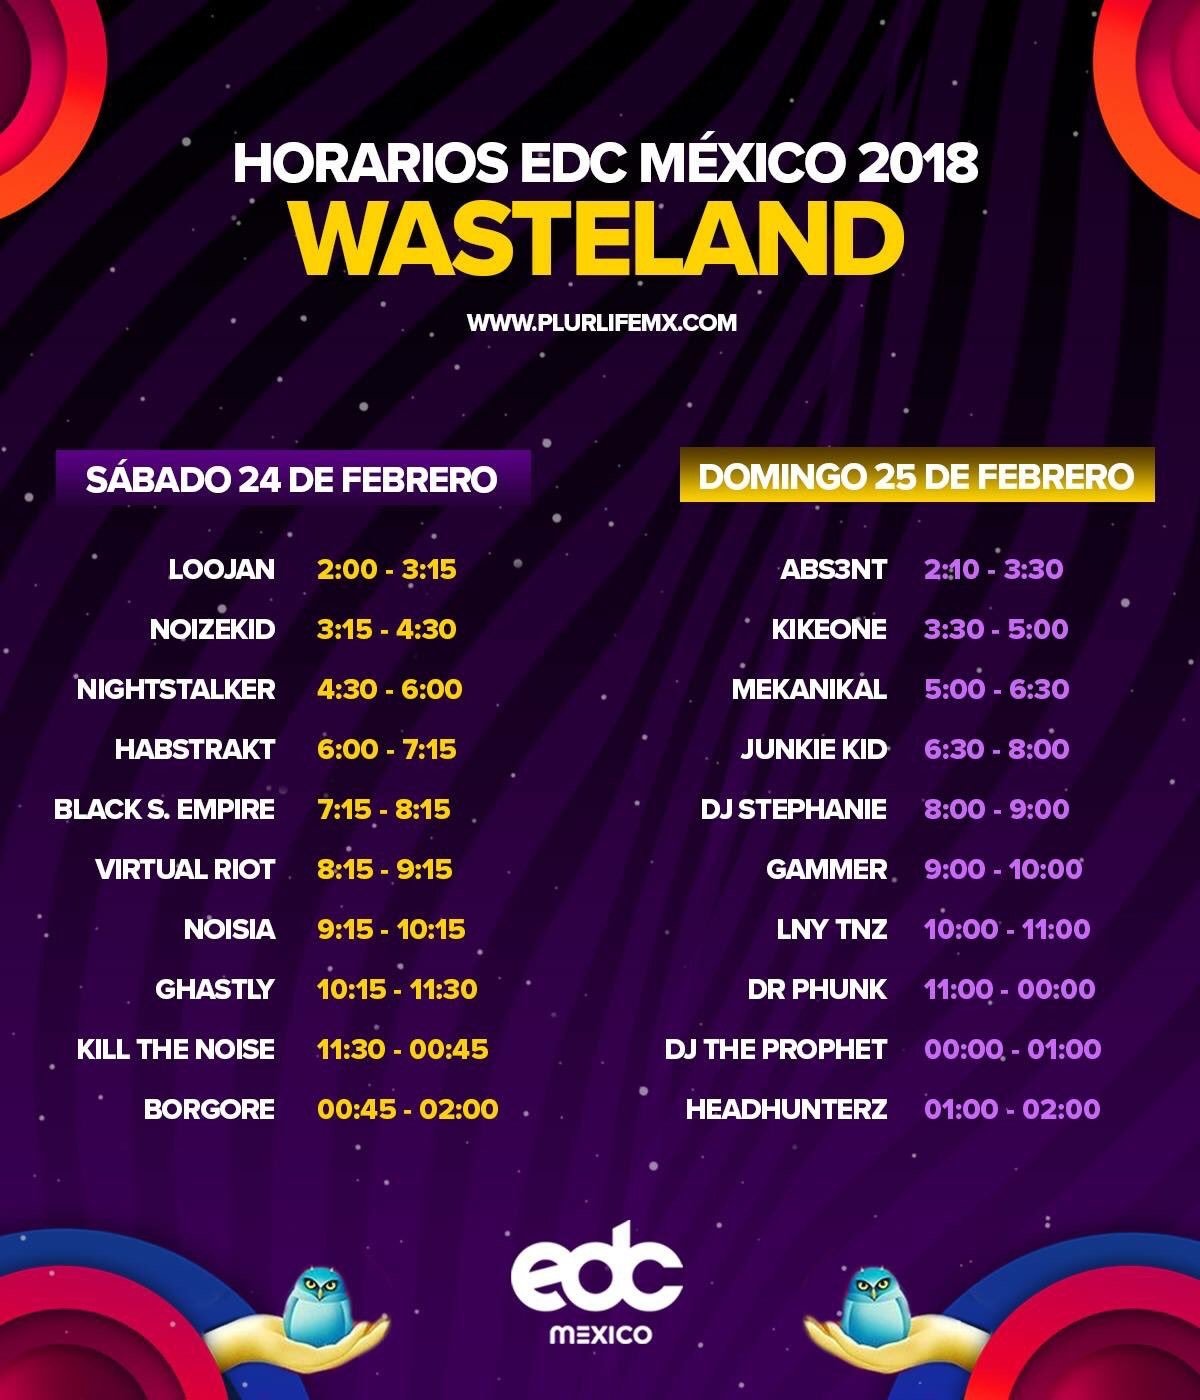 Horarios EDC Mexico 2018 escenario WASTELAND